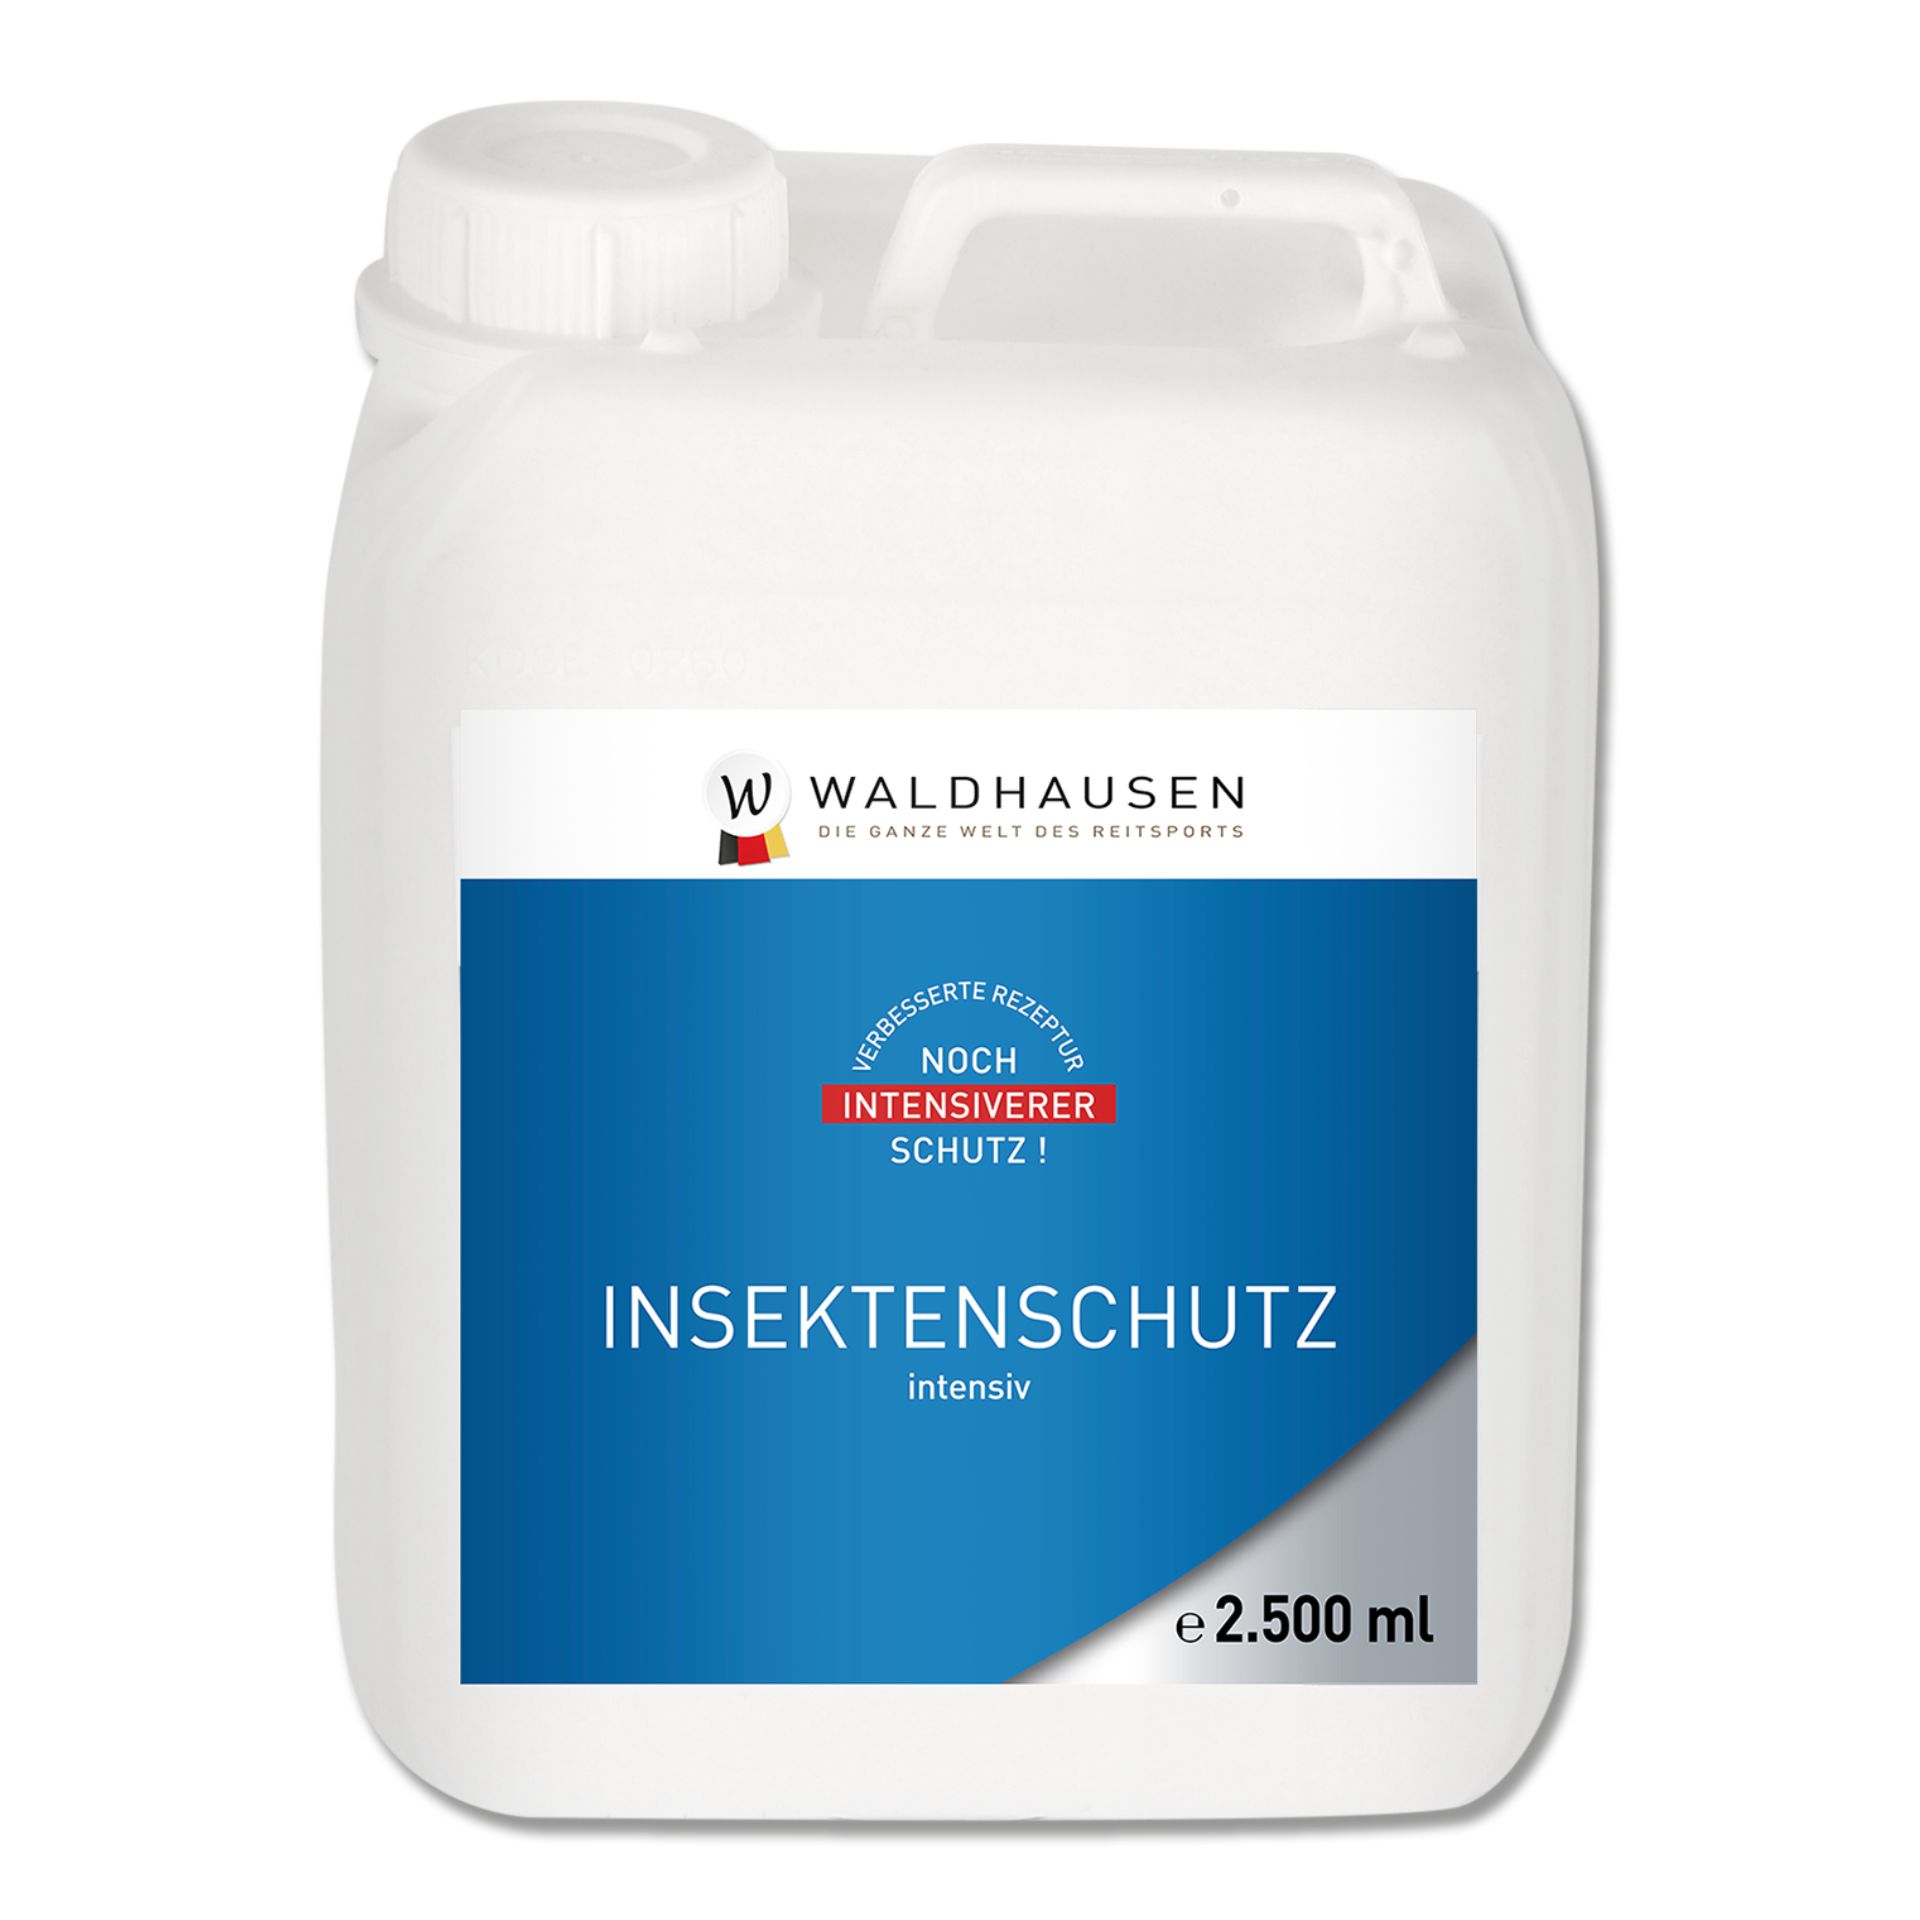 Waldhausen Insektenschutz Intensiv, 2500 ml